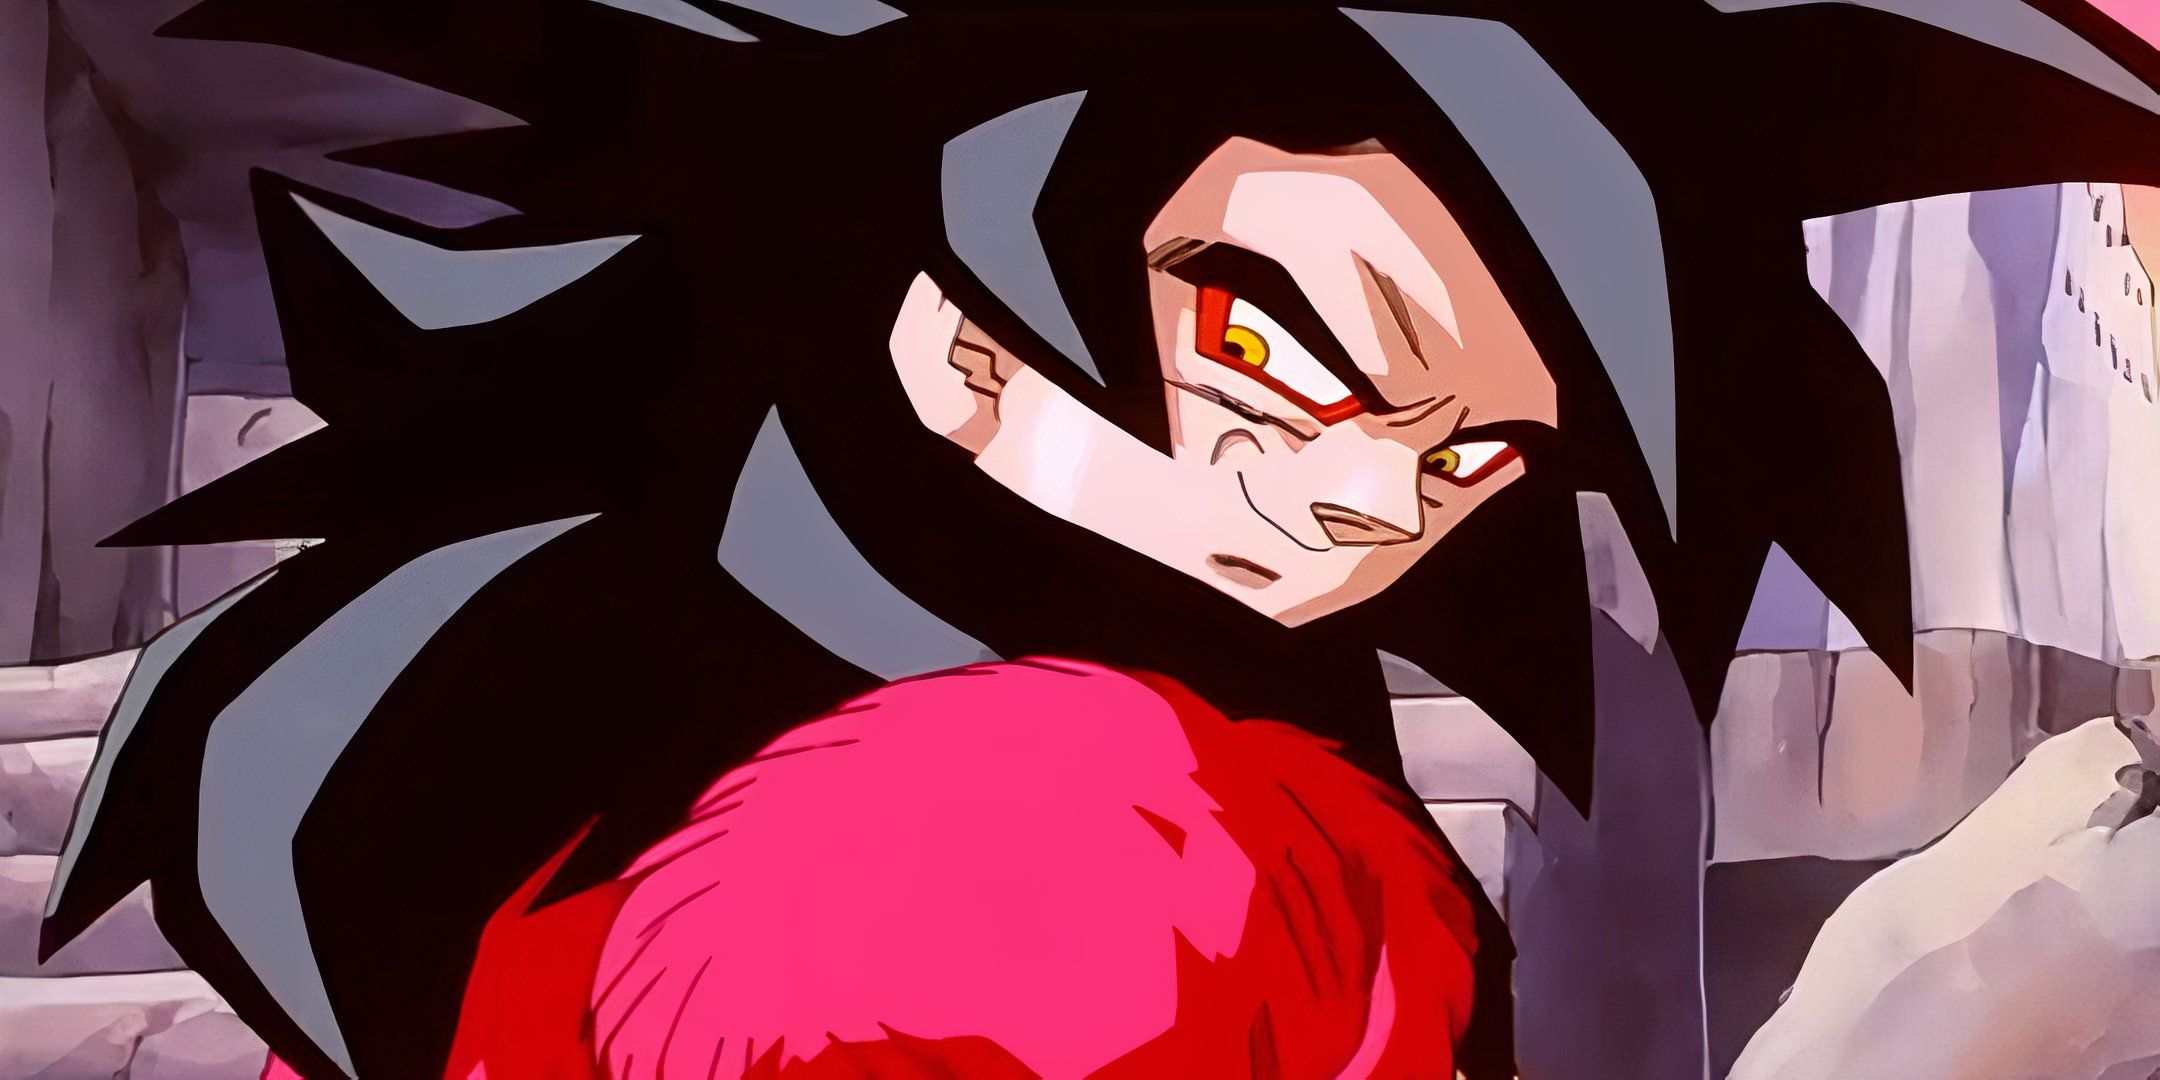 Goku voice actor seemingly confirms Super Saiyan 4 in Dragon Ball: Sparking Zero